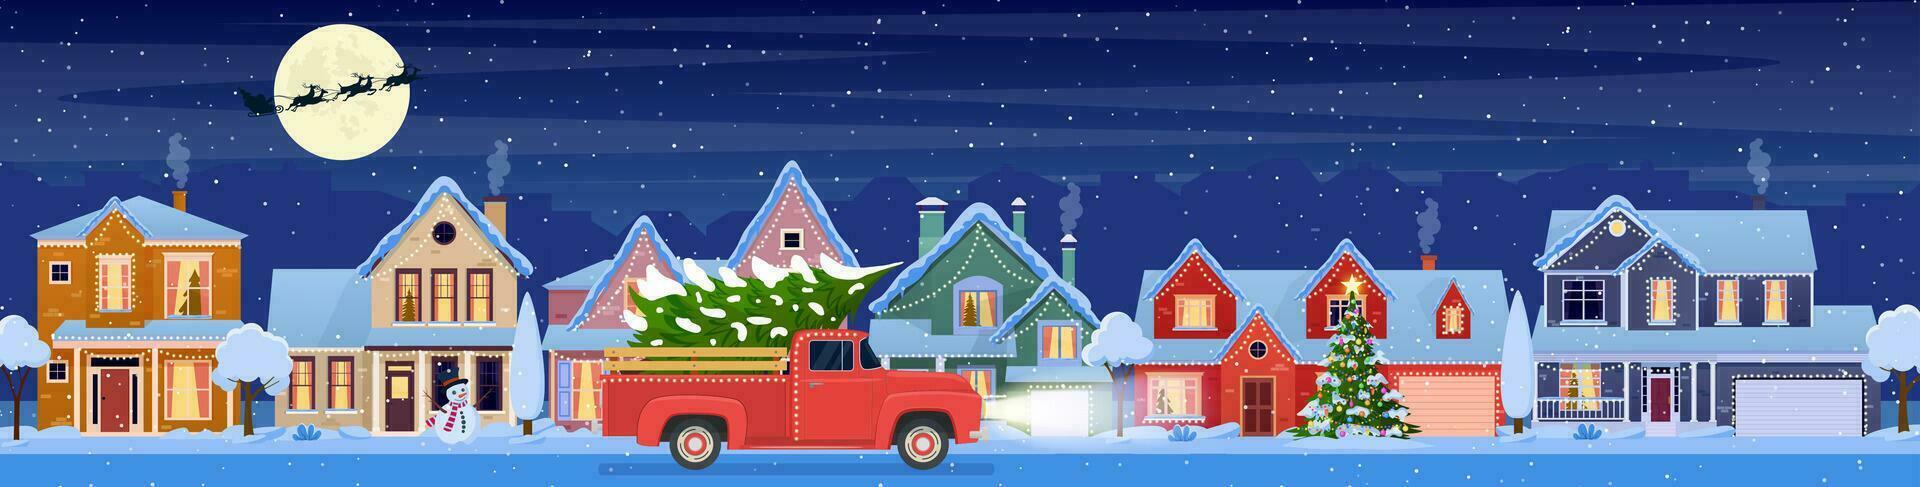 bostads- hus med jul dekoration på natt. jul landskap kort design av retro bil med presentlåda på de topp. bakgrund med måne och de santa claus. vektor illustration